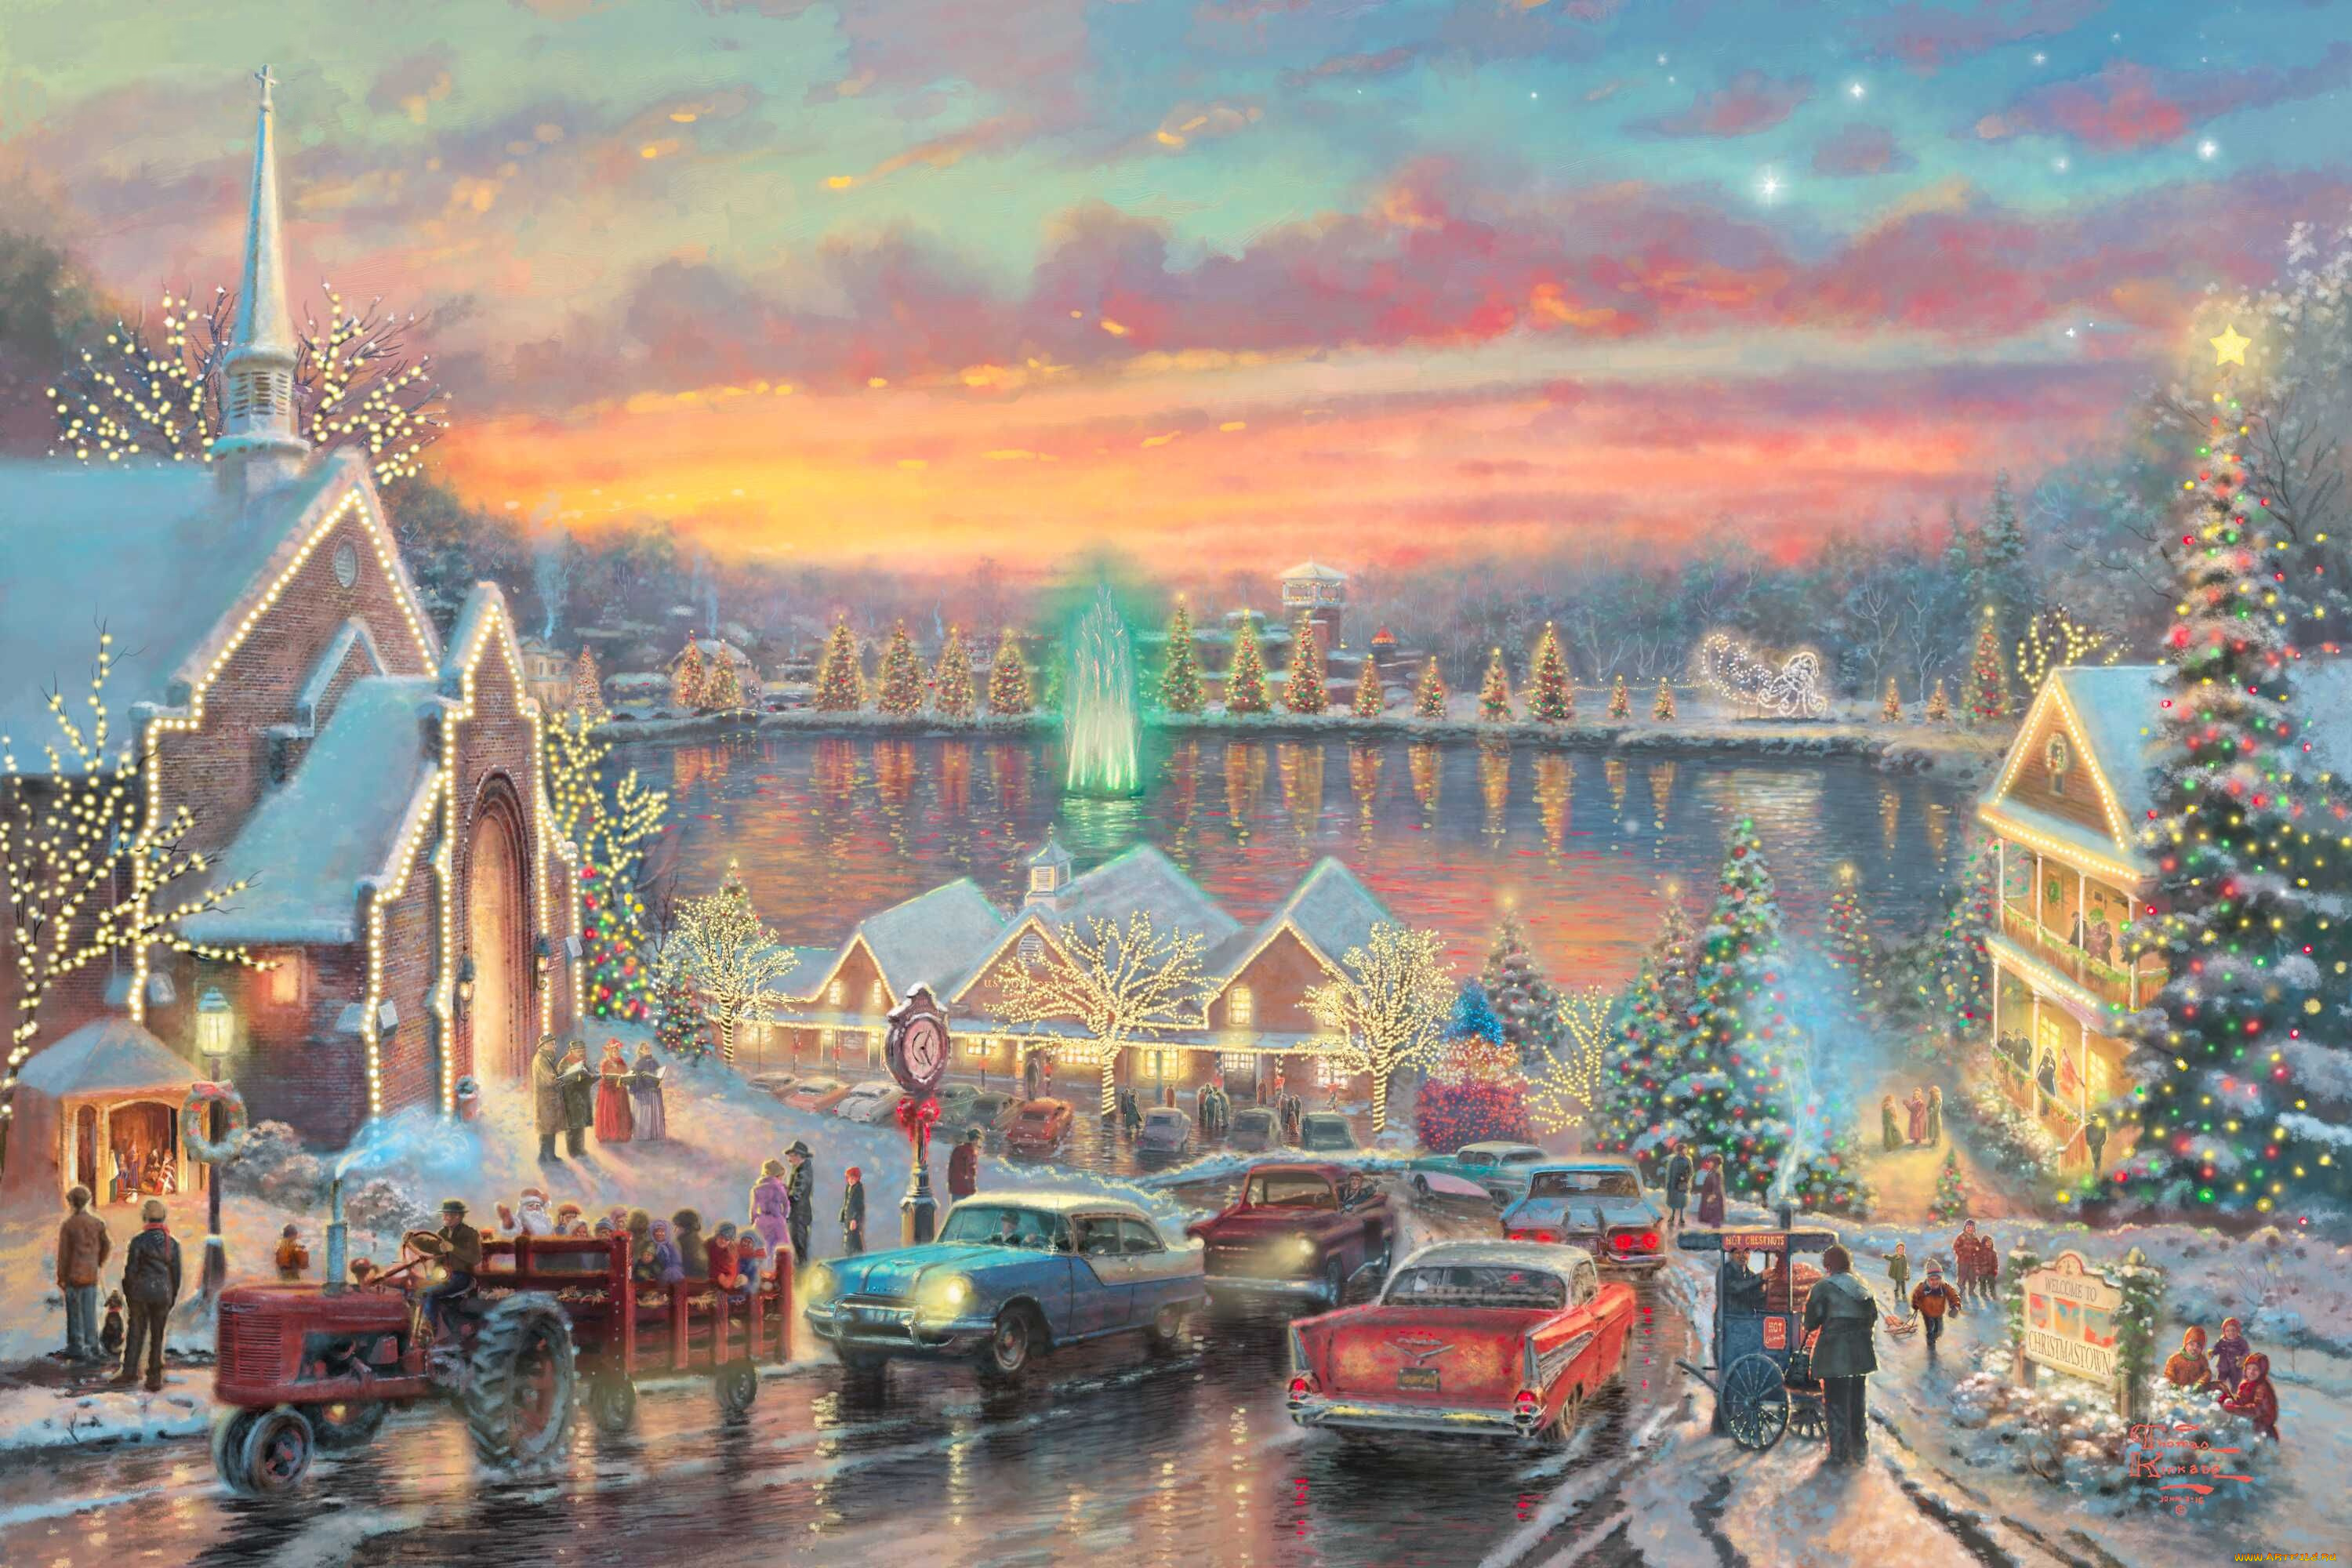 the, lights, of, christmastown, рисованные, thomas, kinkade, люди, рождество, северная, каролина, городок, автомобиль, елка